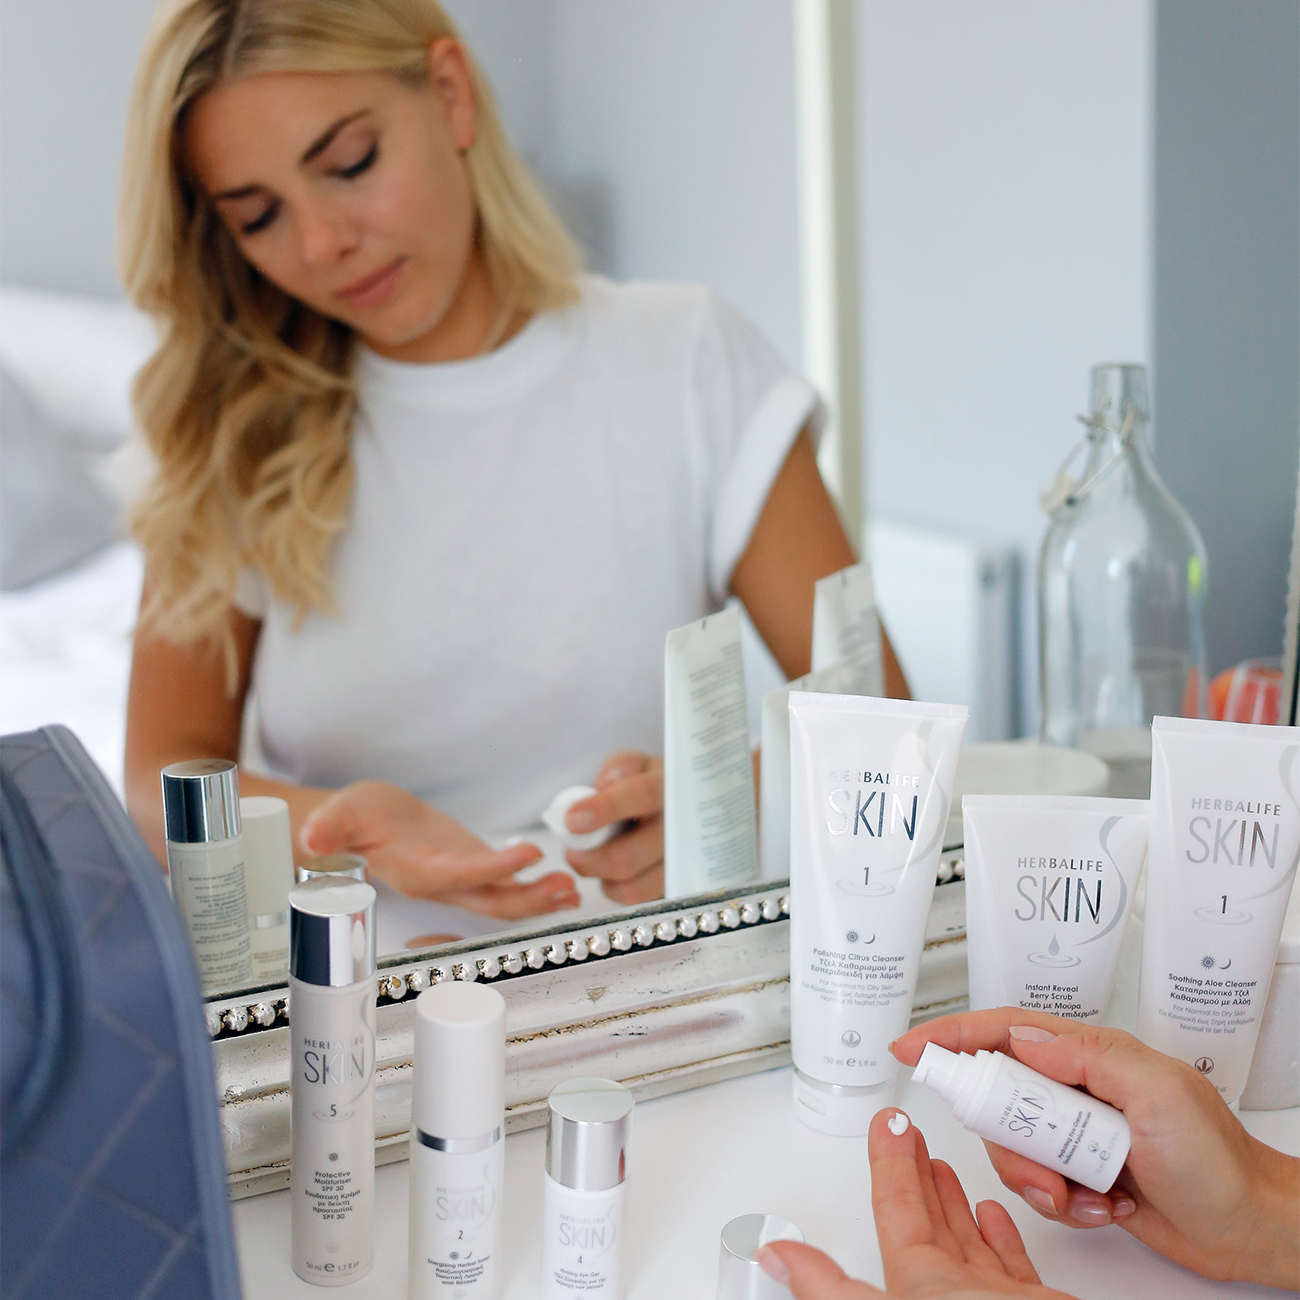 Billede: Kvinde i spejlet bruger Herbalife skin-produkter